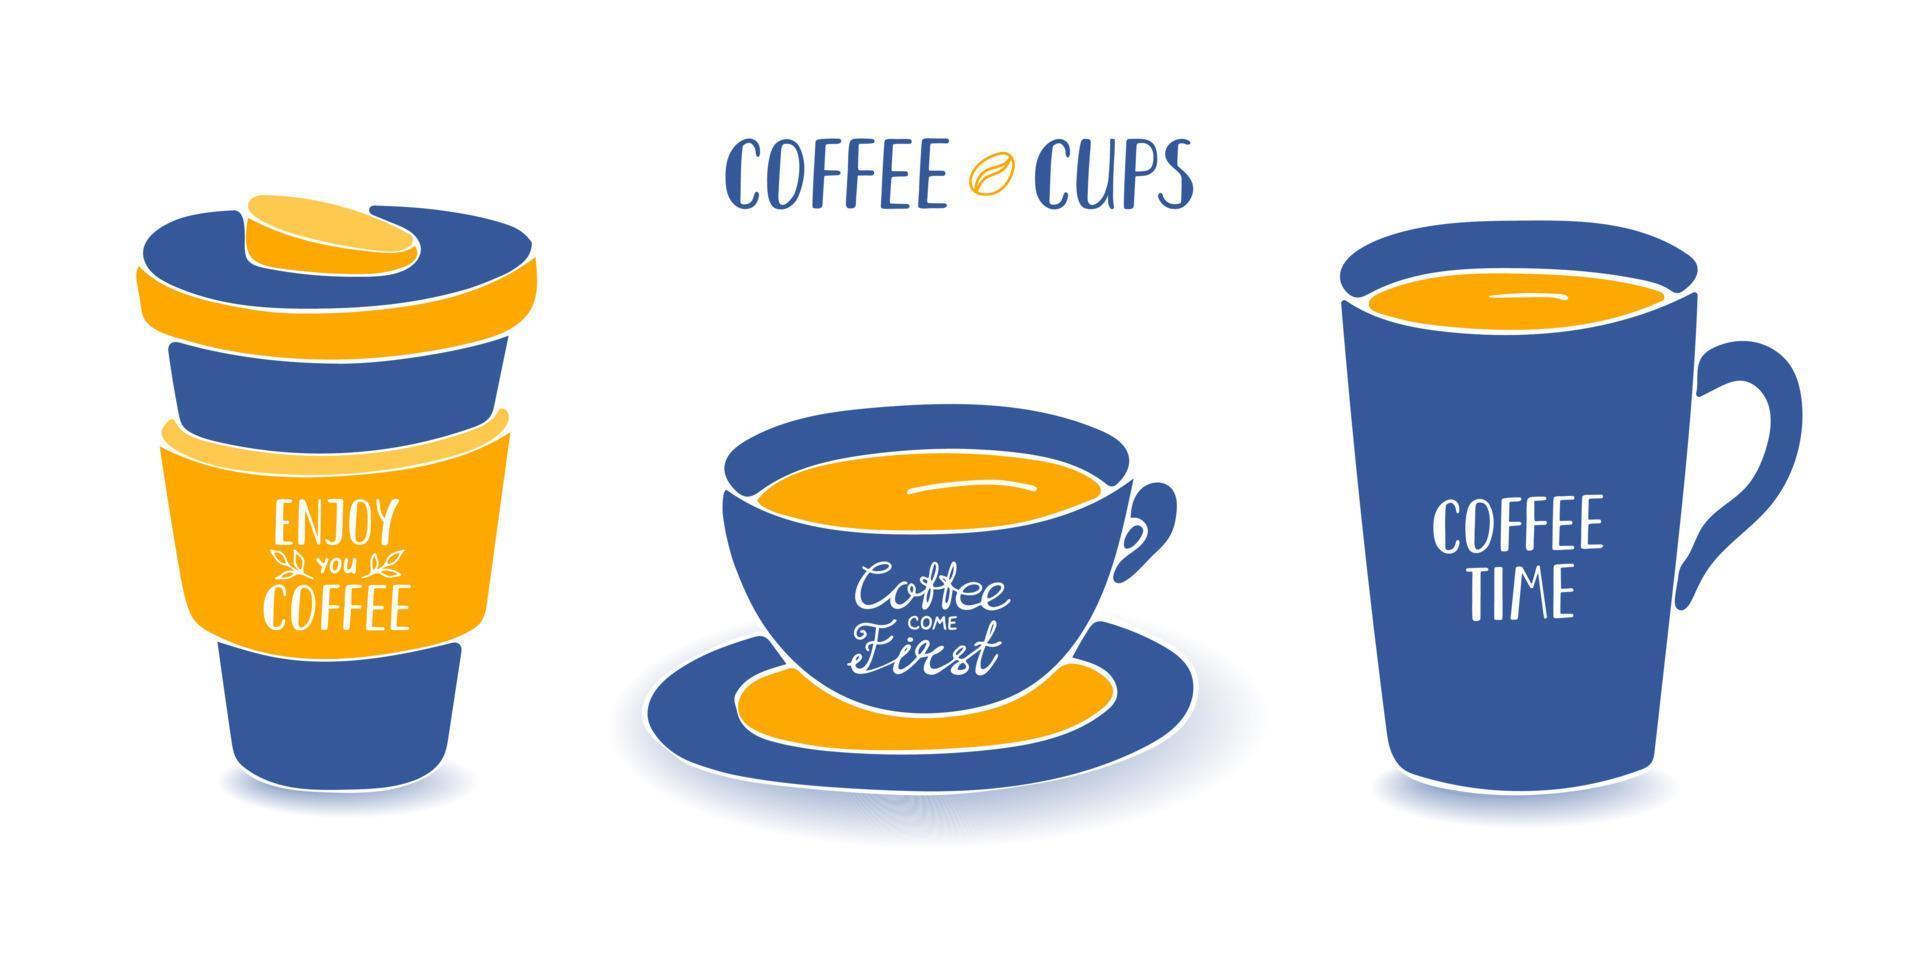 juego de tazas planas de café con letras. ilustración vectorial dibujada a mano de taza y taza propia con cita sobre café. bueno para el diseño de menús o cafeterías. vector